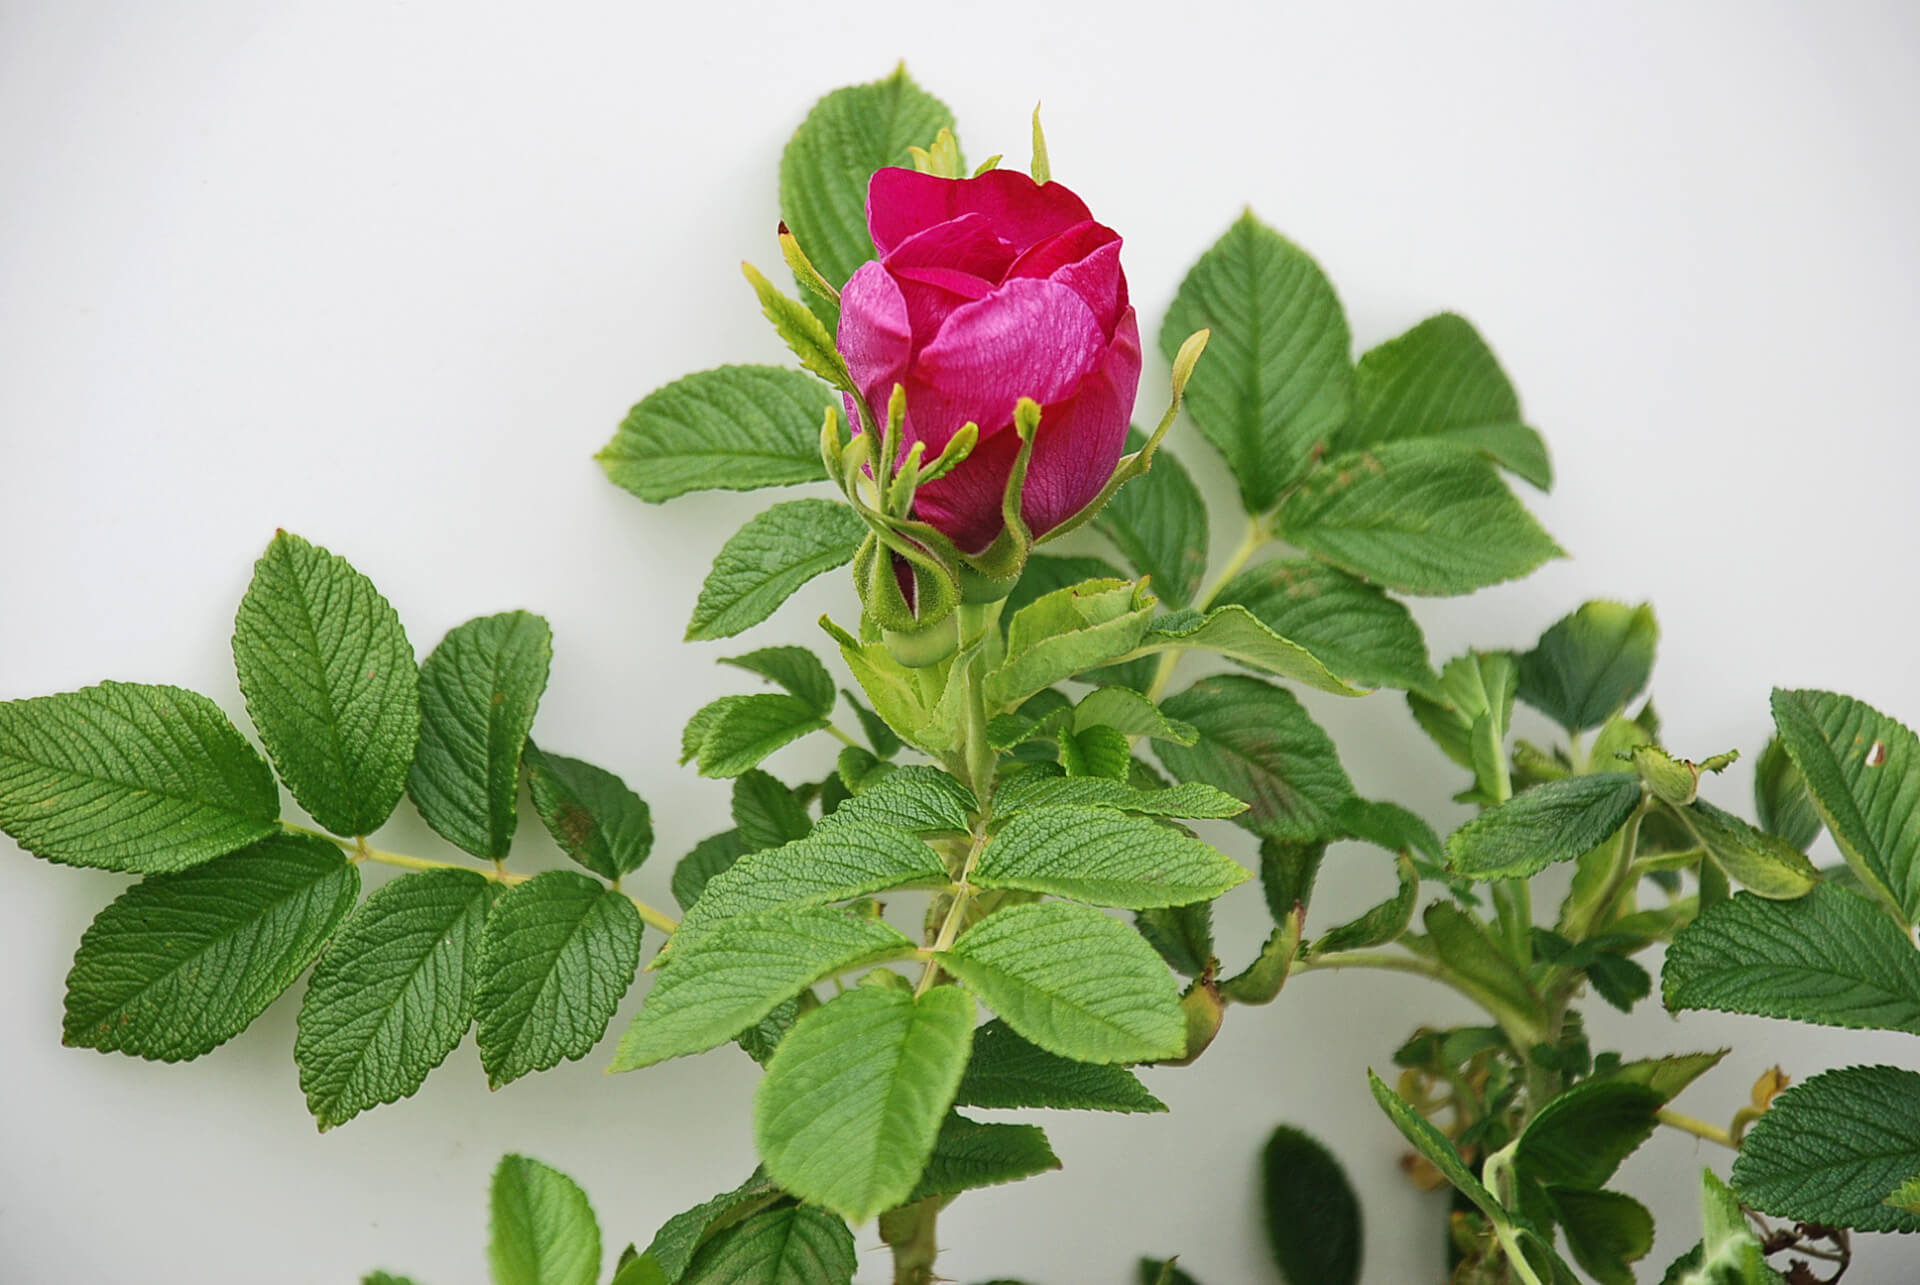 Как отличить розу от шиповника